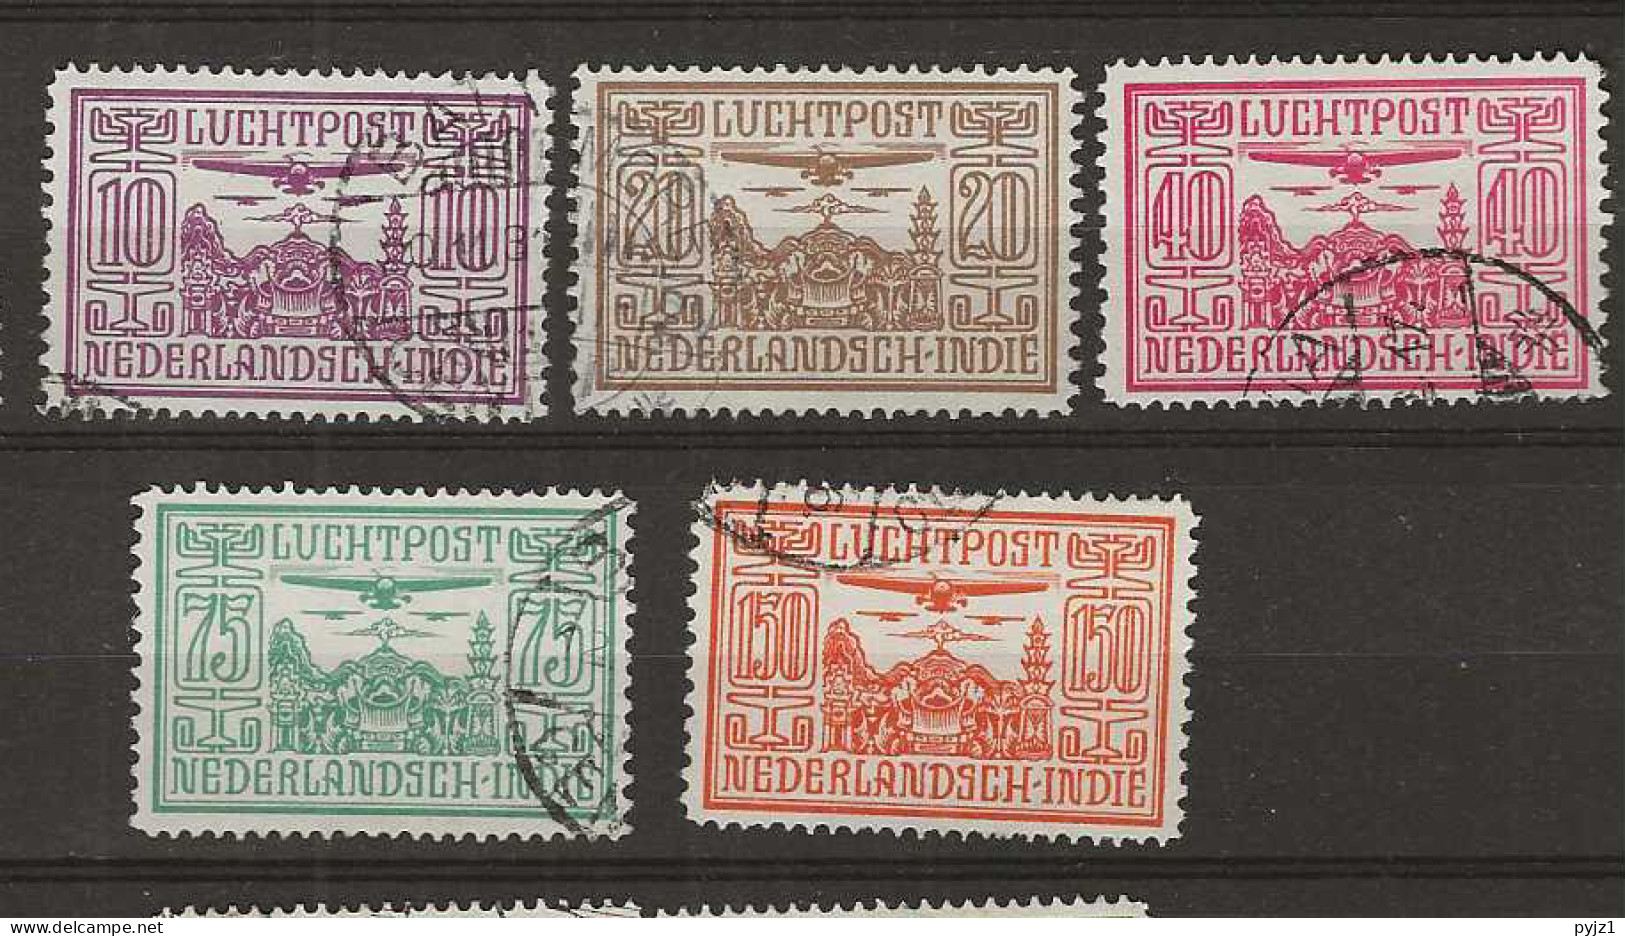 1928 USED Nederlands Indië Airmail NVPH LP 6-10 - Netherlands Indies